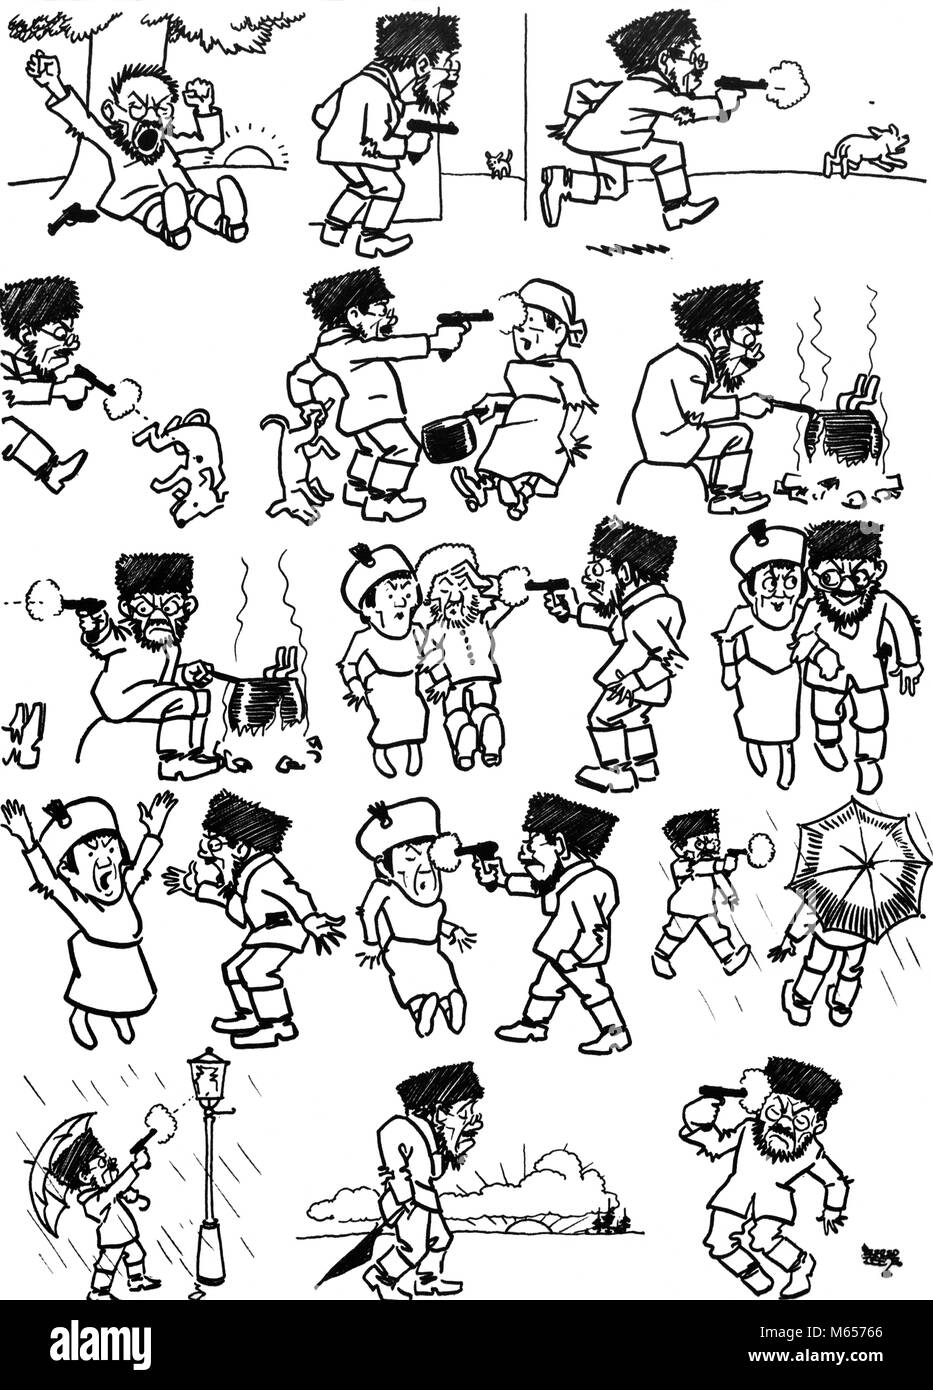 1900 s 1917 Cartoon illustriert EIN TAG IM LEBEN EINES BOLSCHEWISTISCHEN VON ALFRED LEETE-h9564 CPC 001 HARS SCHWARZ UND WEISS BOLSCHEWISTISCHEN KARIKATURIST TAG IM LEBEN ILLUSTRIEREN LEETE ALTMODISCH Stockfoto